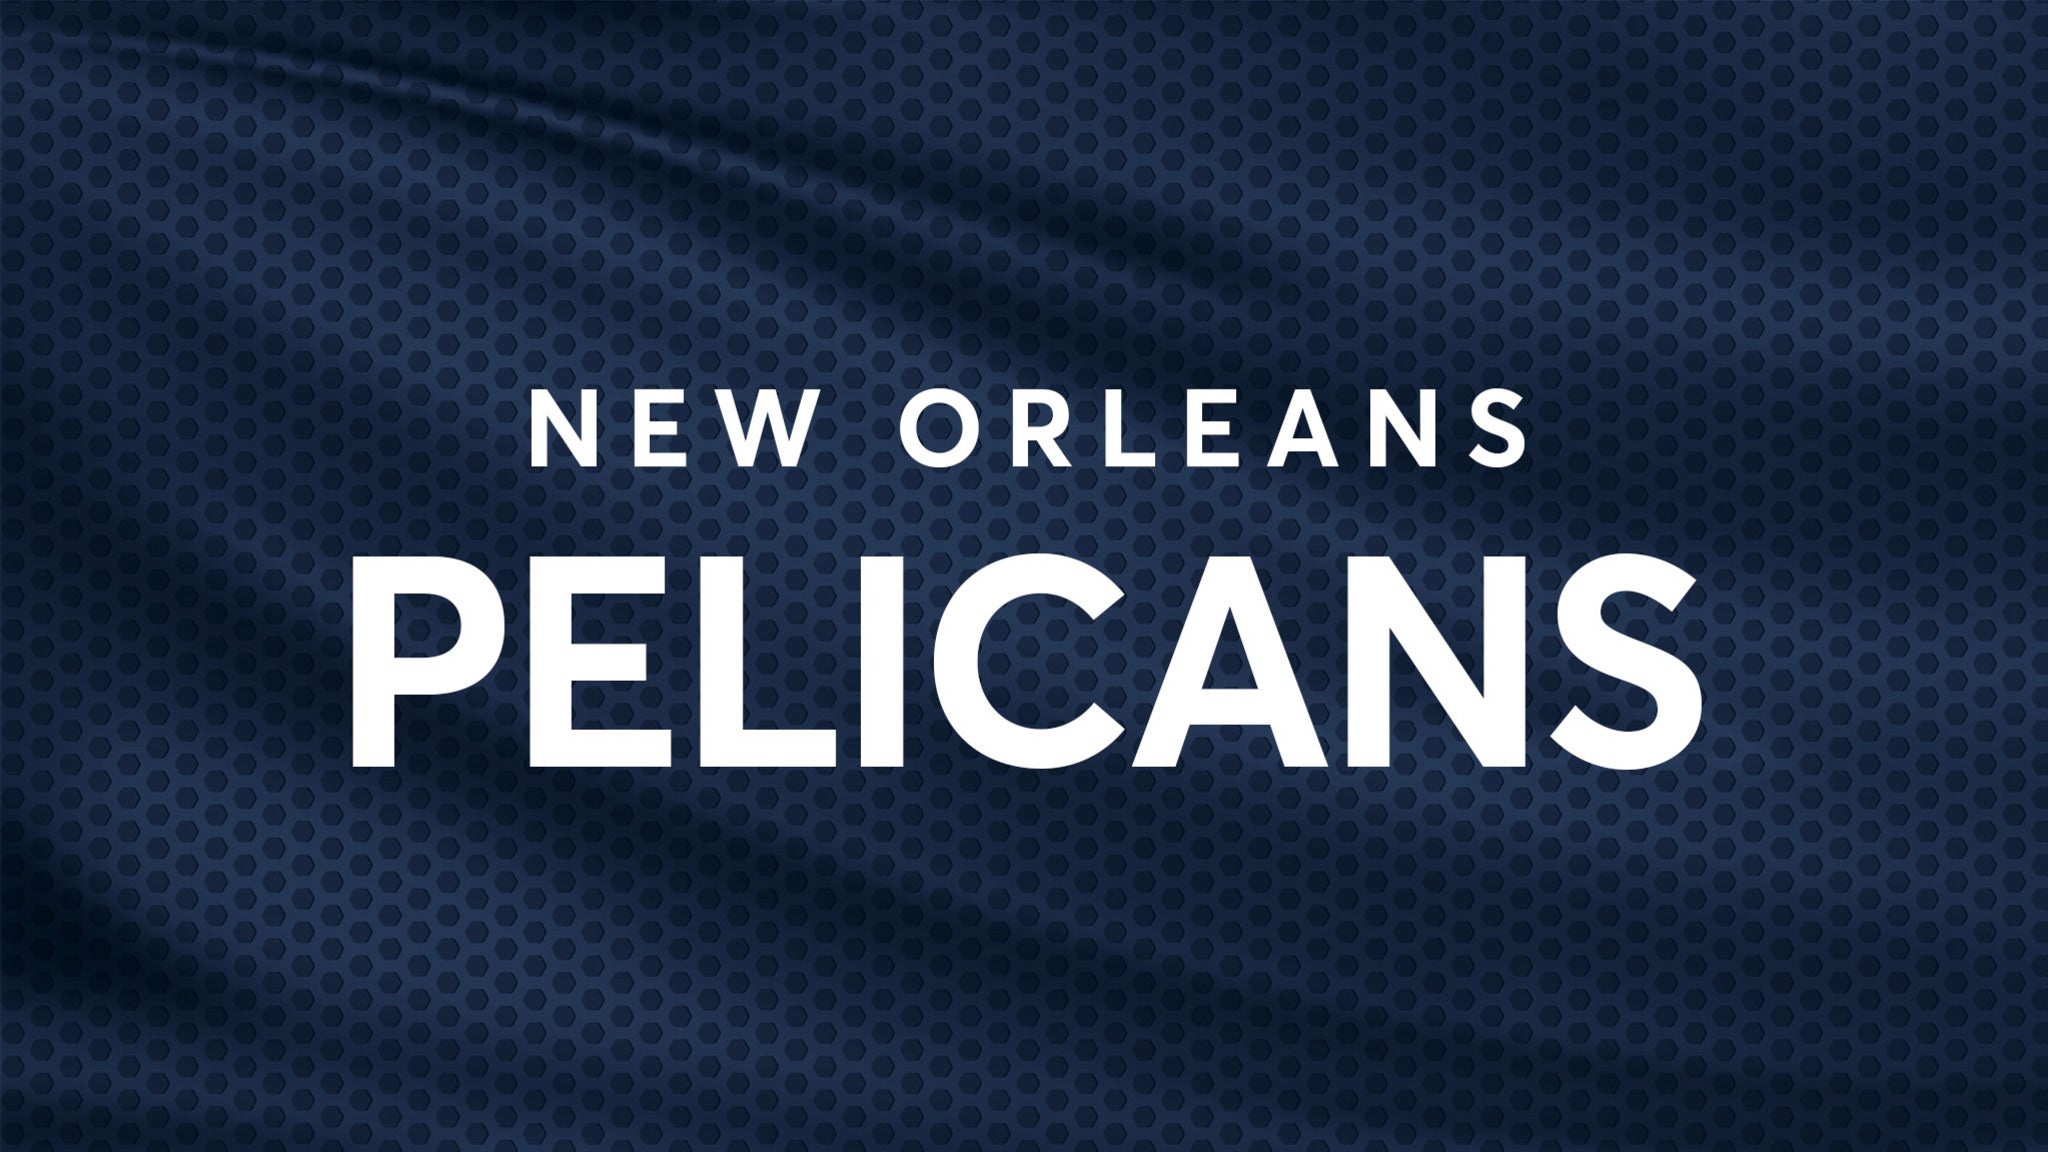 New Orleans Pelicans vs. Memphis Grizzlies